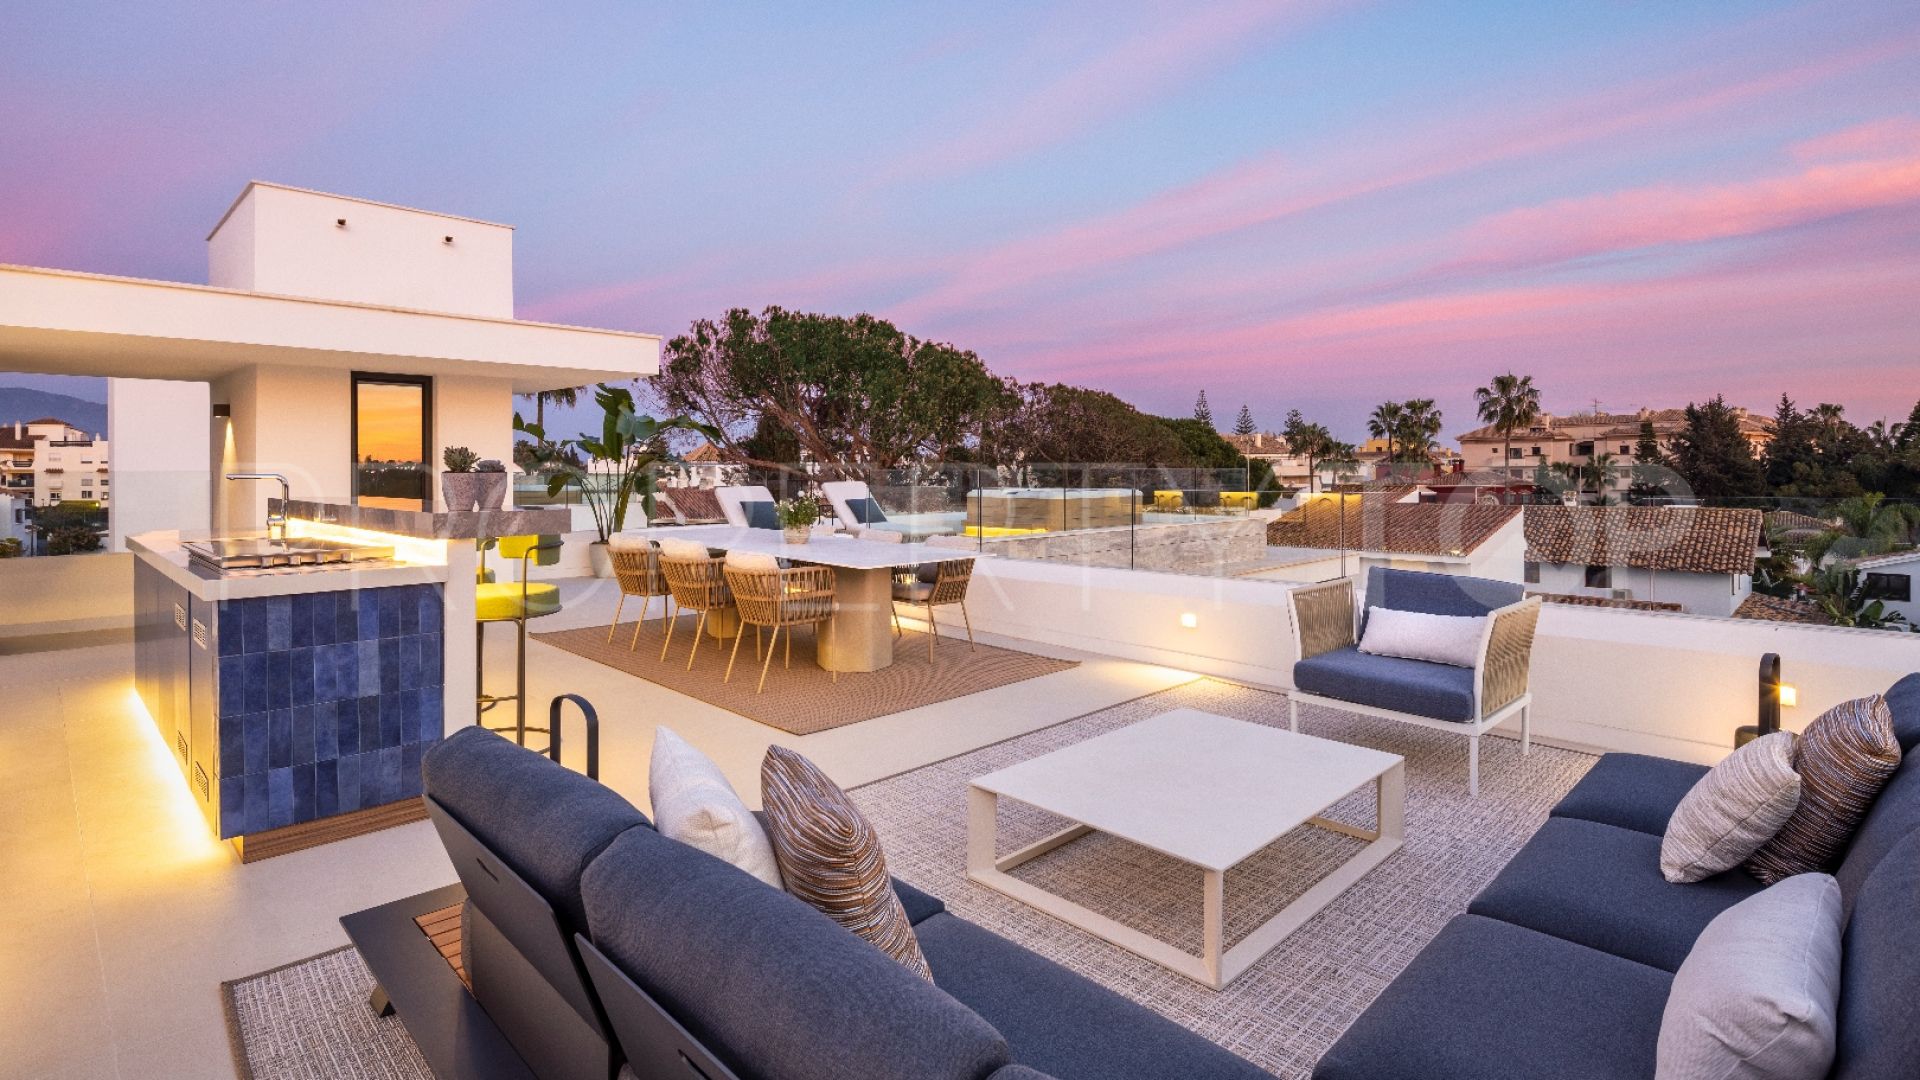 5 bedrooms Los Angeles villa for sale